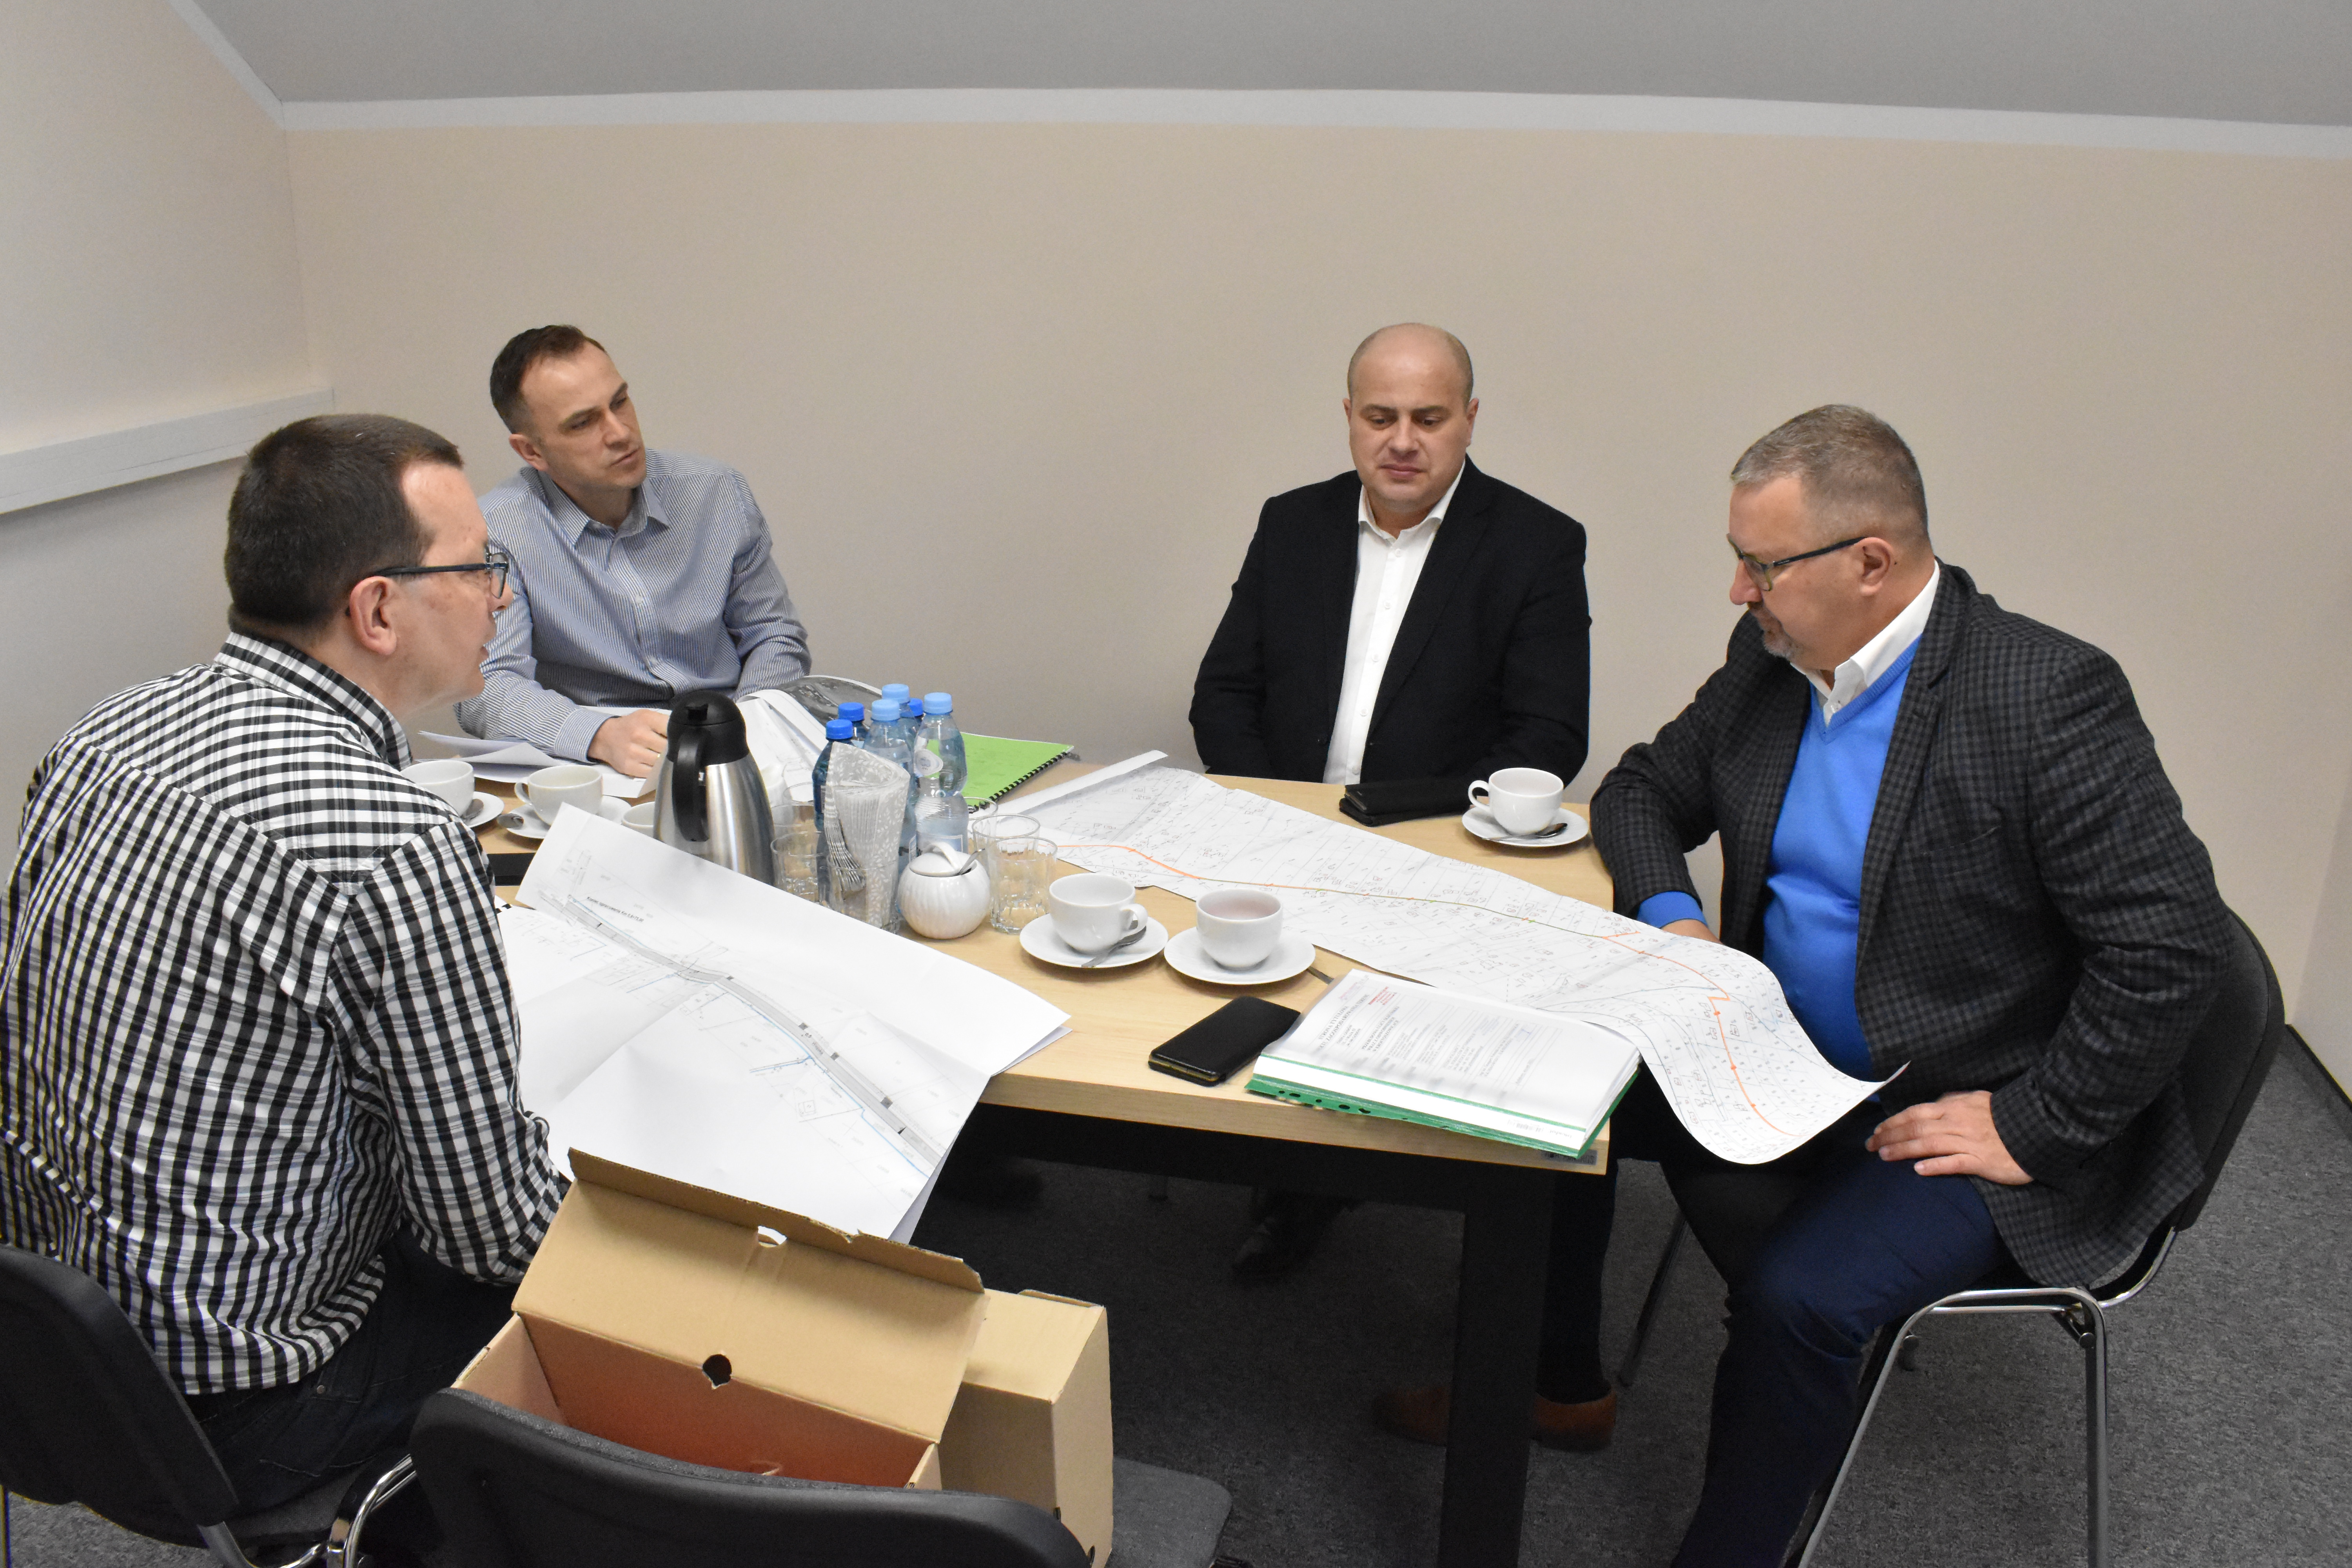 W spotkaniu wzięli udział wójtowie Mariusz Adamczyk i Daniel Jakubczyk oraz kierownicy Zbigniew Prucnal i Marek Bauerek